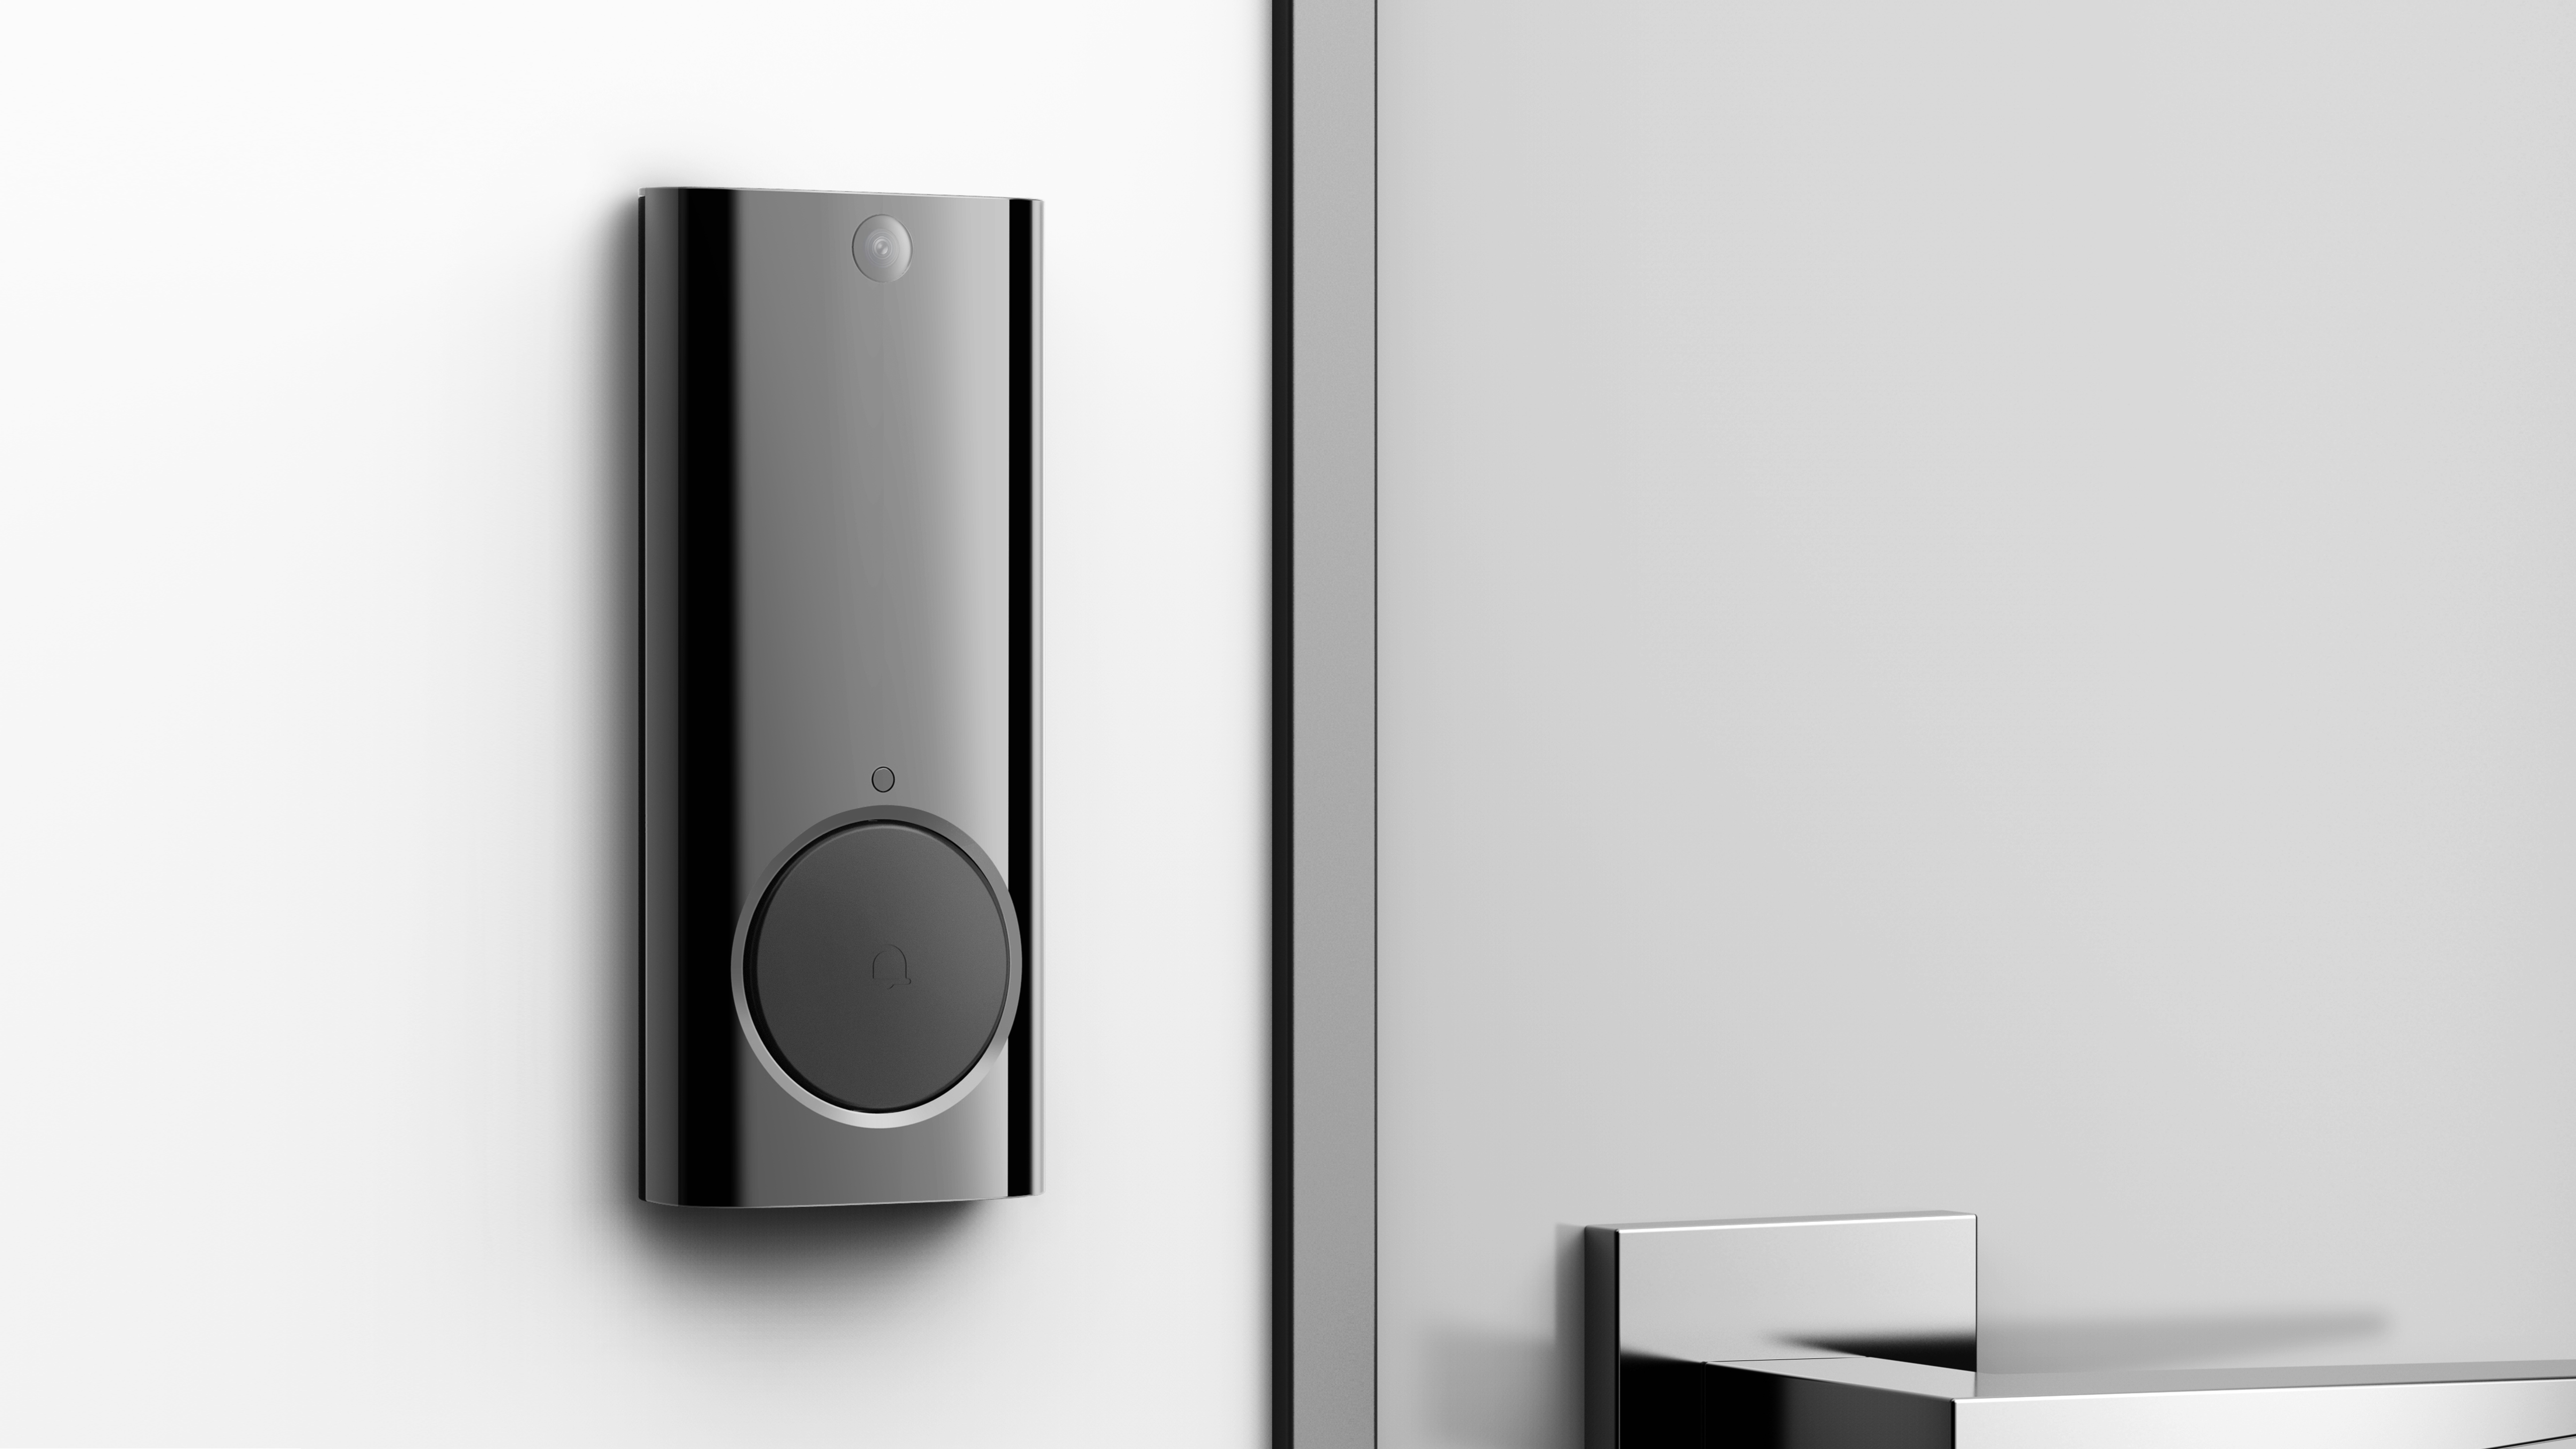 The black brick - Intelligent doorbell camera